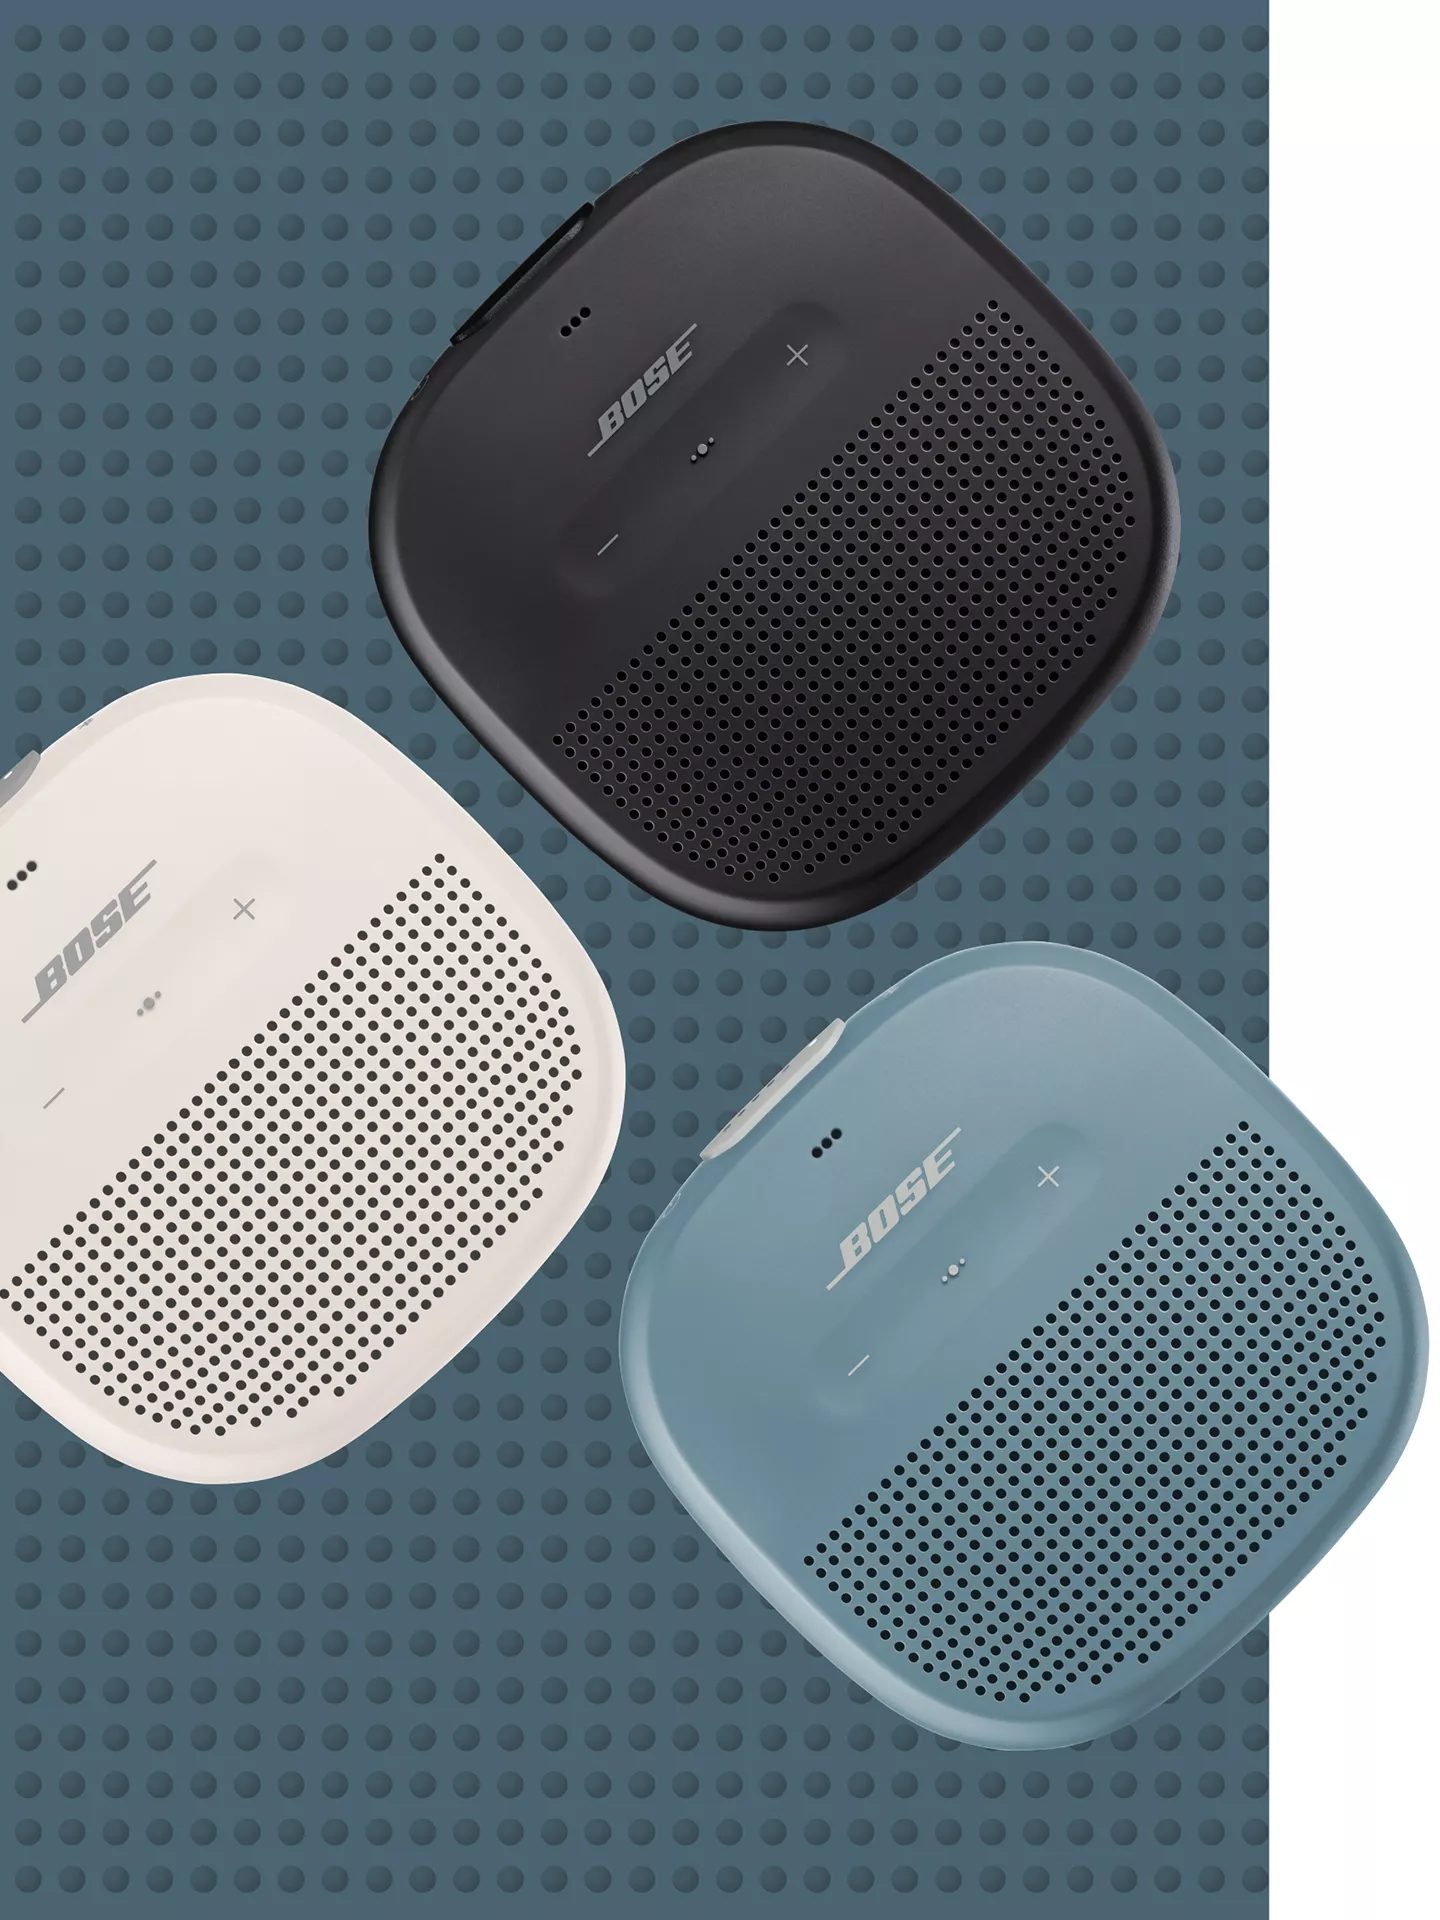 SoundLink Micro Waterproof Bluetooth Speaker Bose